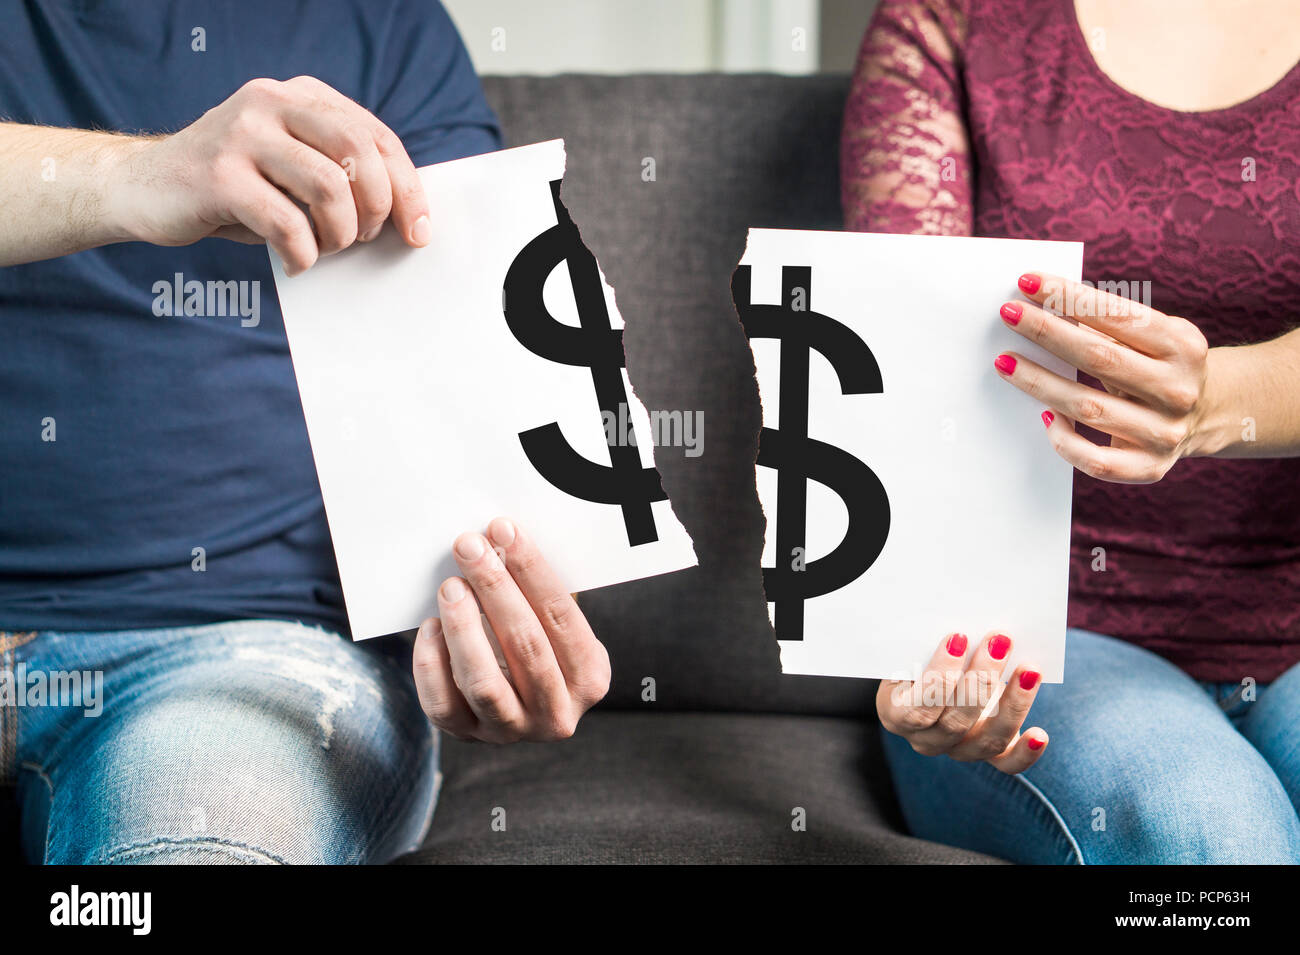 Über Geld oder finanzielle Argument Konzept kämpfen. Mann und Frau mit RIP verarbeitet Papier mit Dollarzeichen. Stockfoto